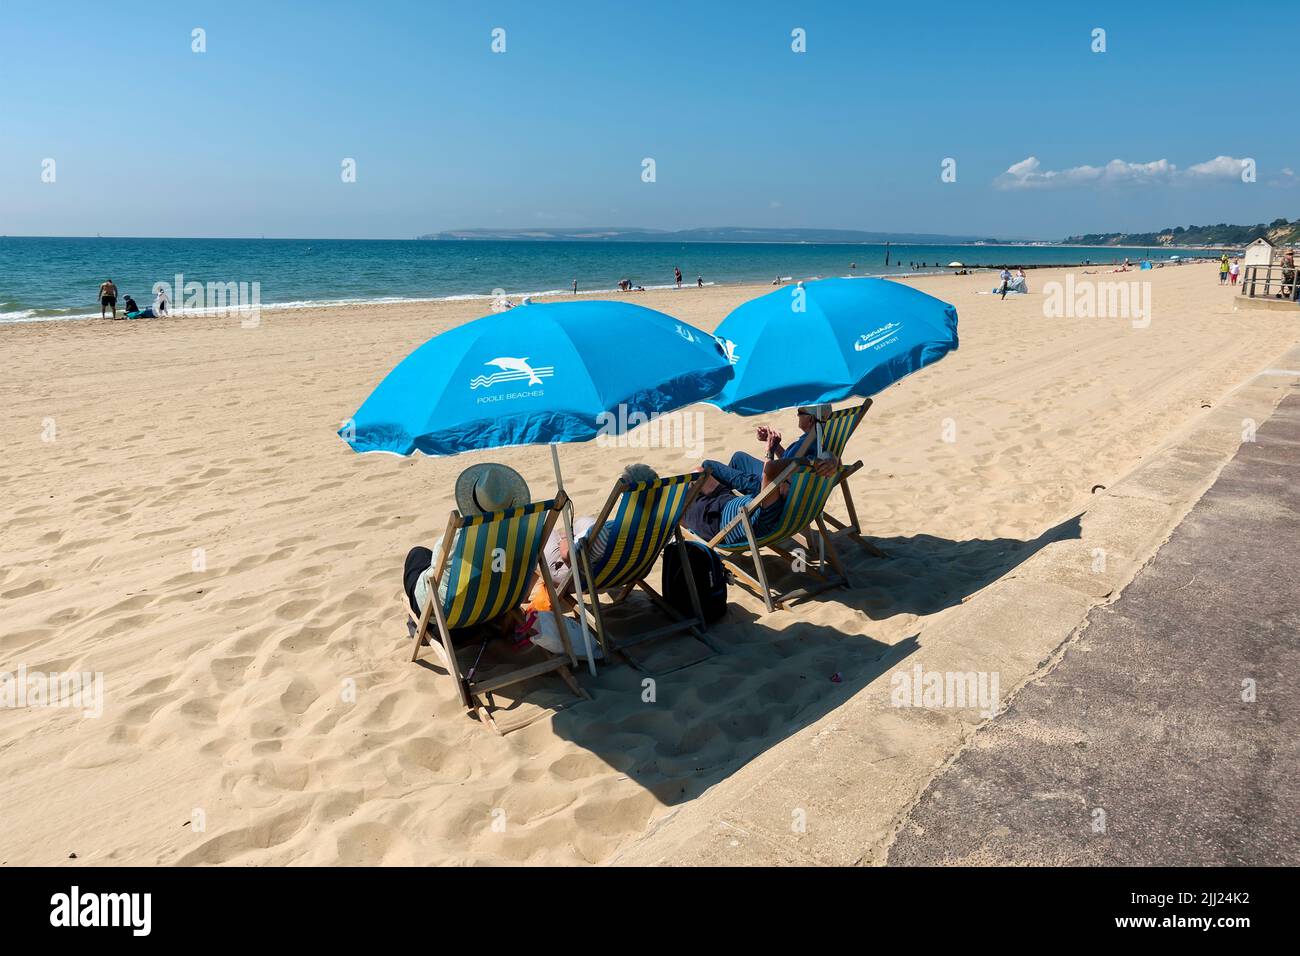 Bournemouth, Dorset, Regno Unito - Luglio 11 2018: Persone che si rilassano e prendono il sole in una calda giornata estiva a Bournemouth Beach a Dorset, Inghilterra, Regno Unito Foto Stock